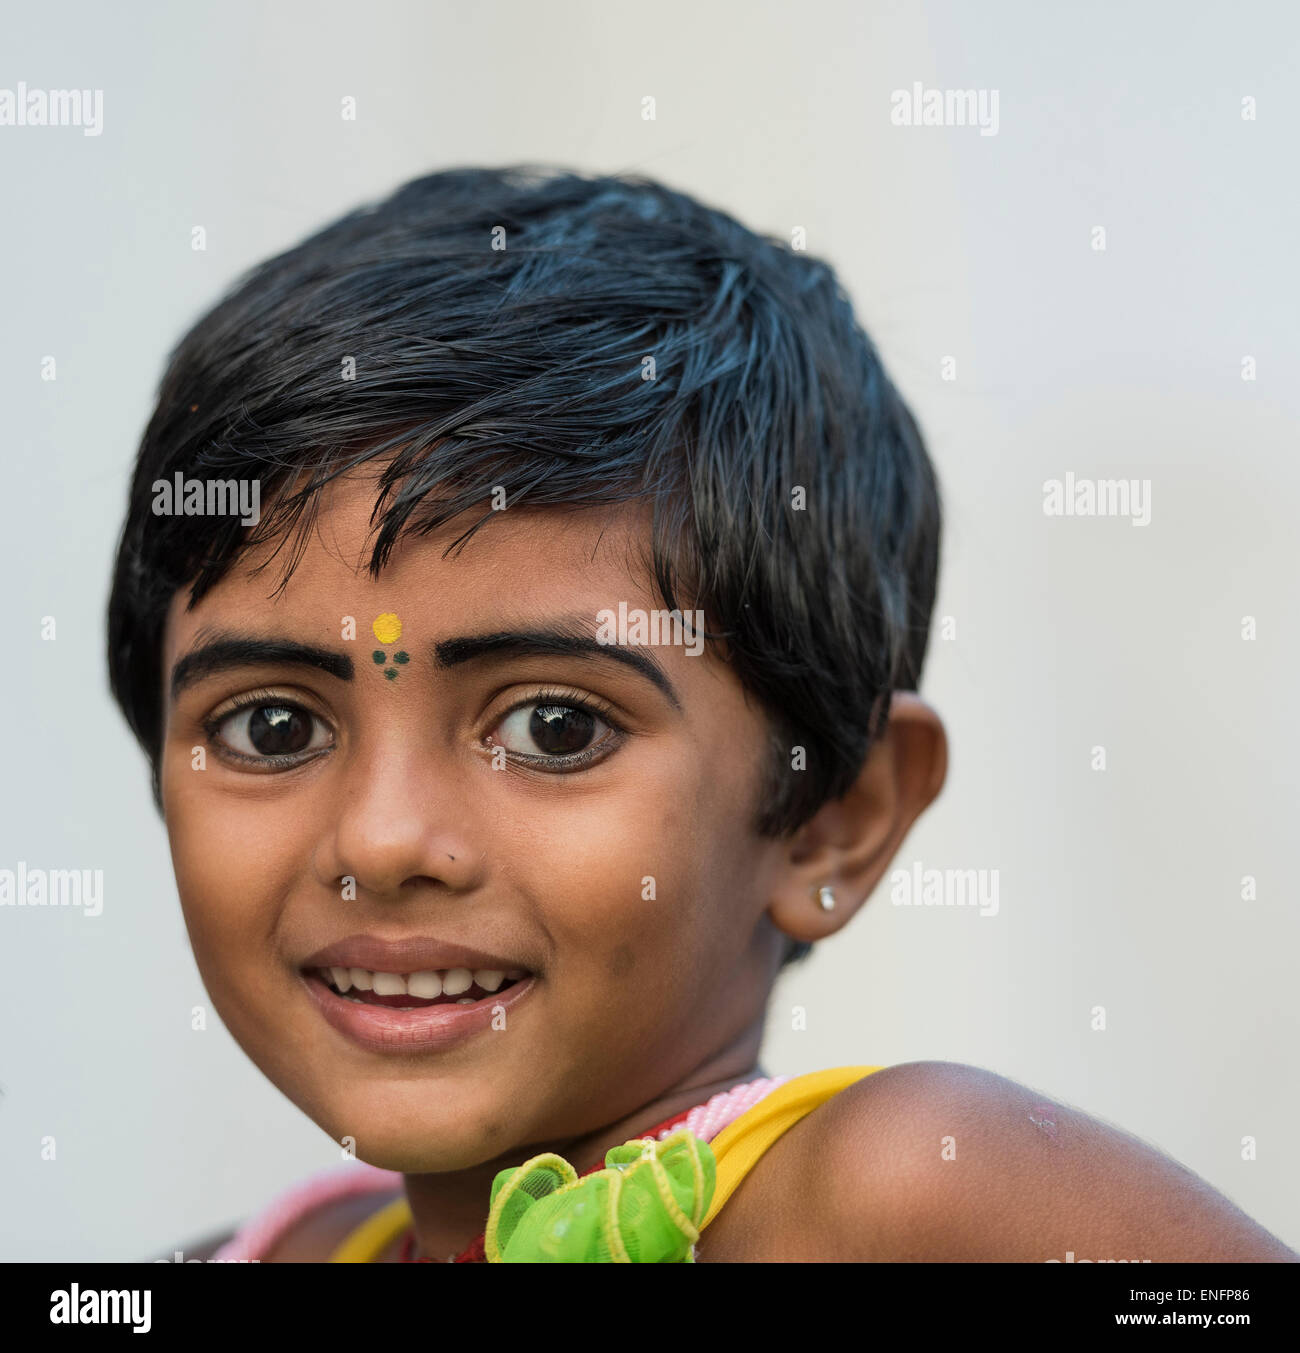 Mädchen mit gelben Bindi auf der Stirn und Kohl-umrandeten Augen, Porträt, Fort Cochin, Kochi, Kerala, Indien Stockfoto